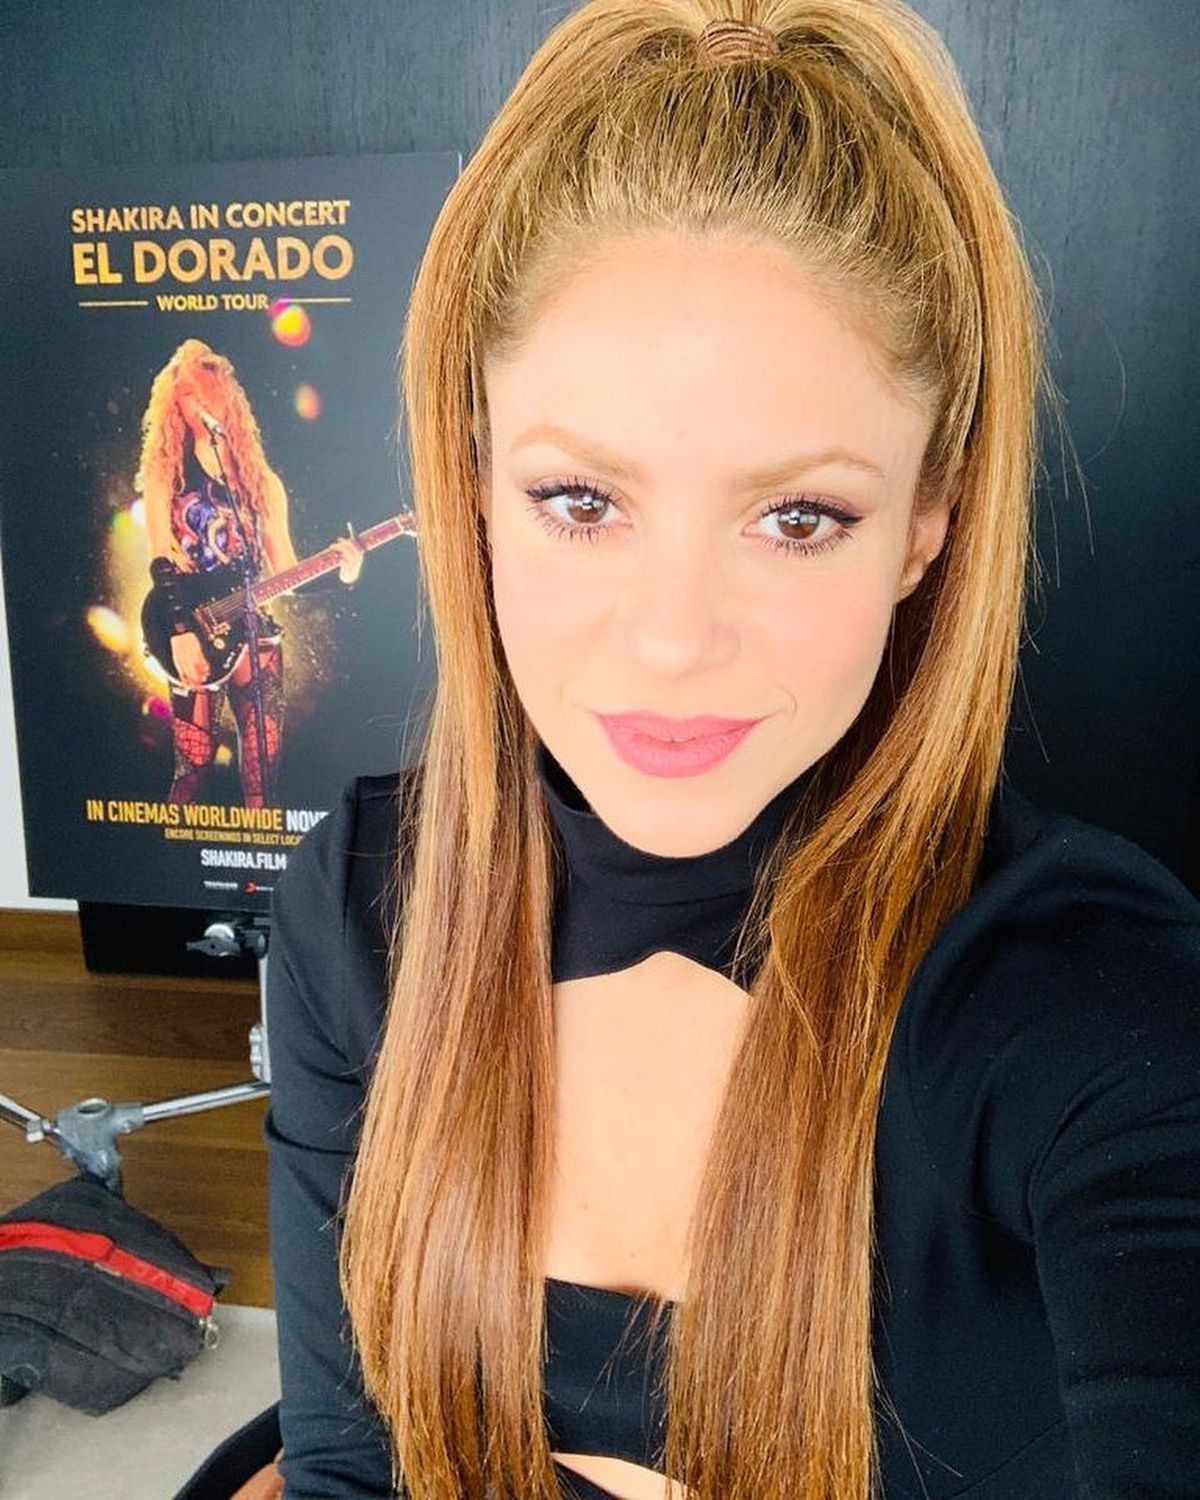 Pique vorbește prima oară despre despărțirea de Shakira: „Ar fi trebuit să mă arunc de la etajul 6!”